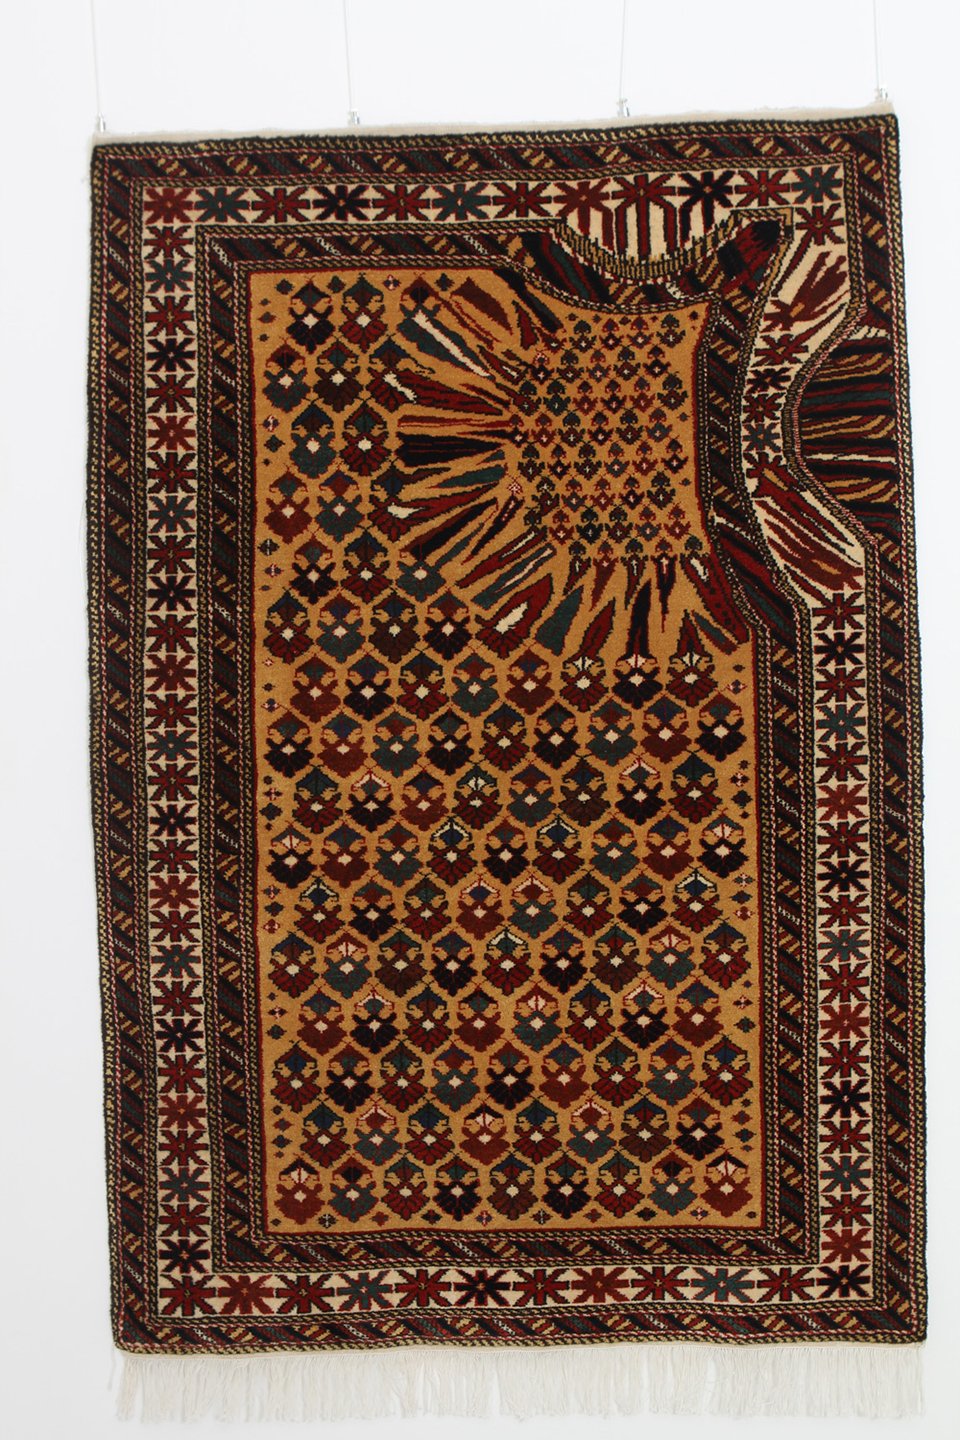 Faig Ahmed’s Carpets